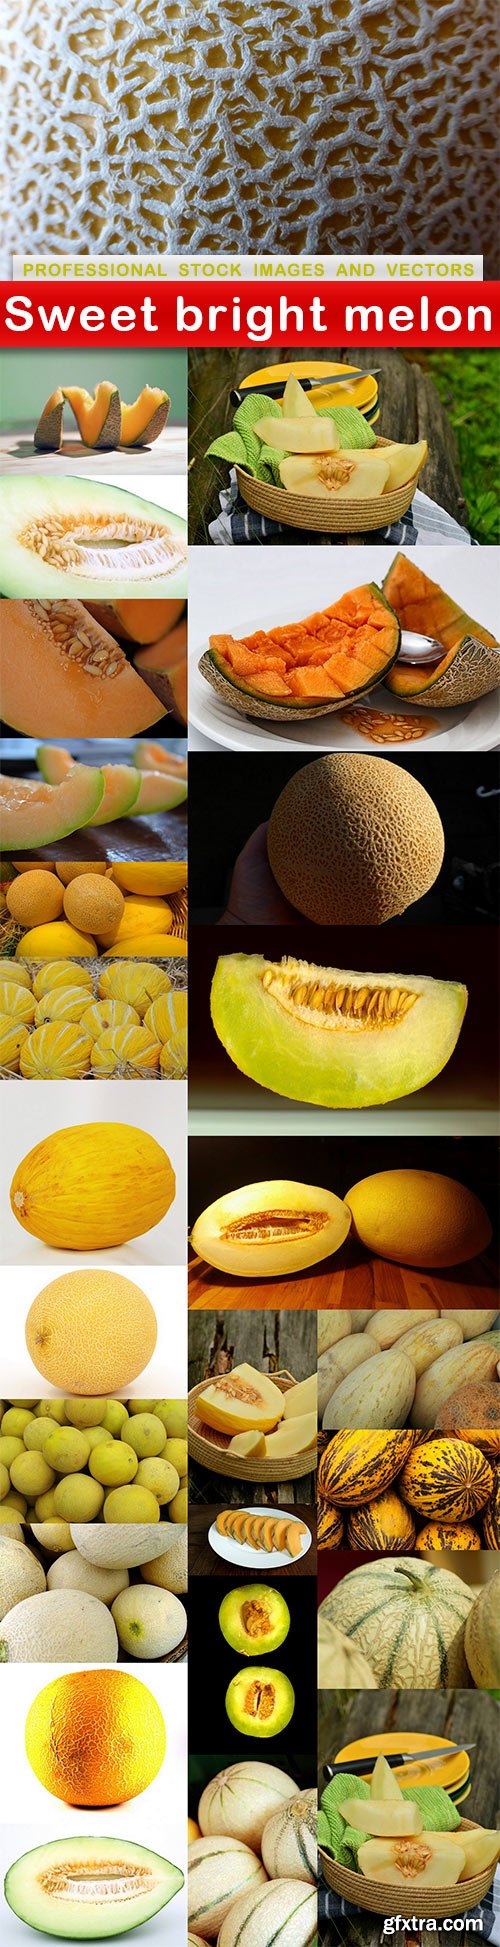 Sweet bright melon - 26 UHQ JPEG